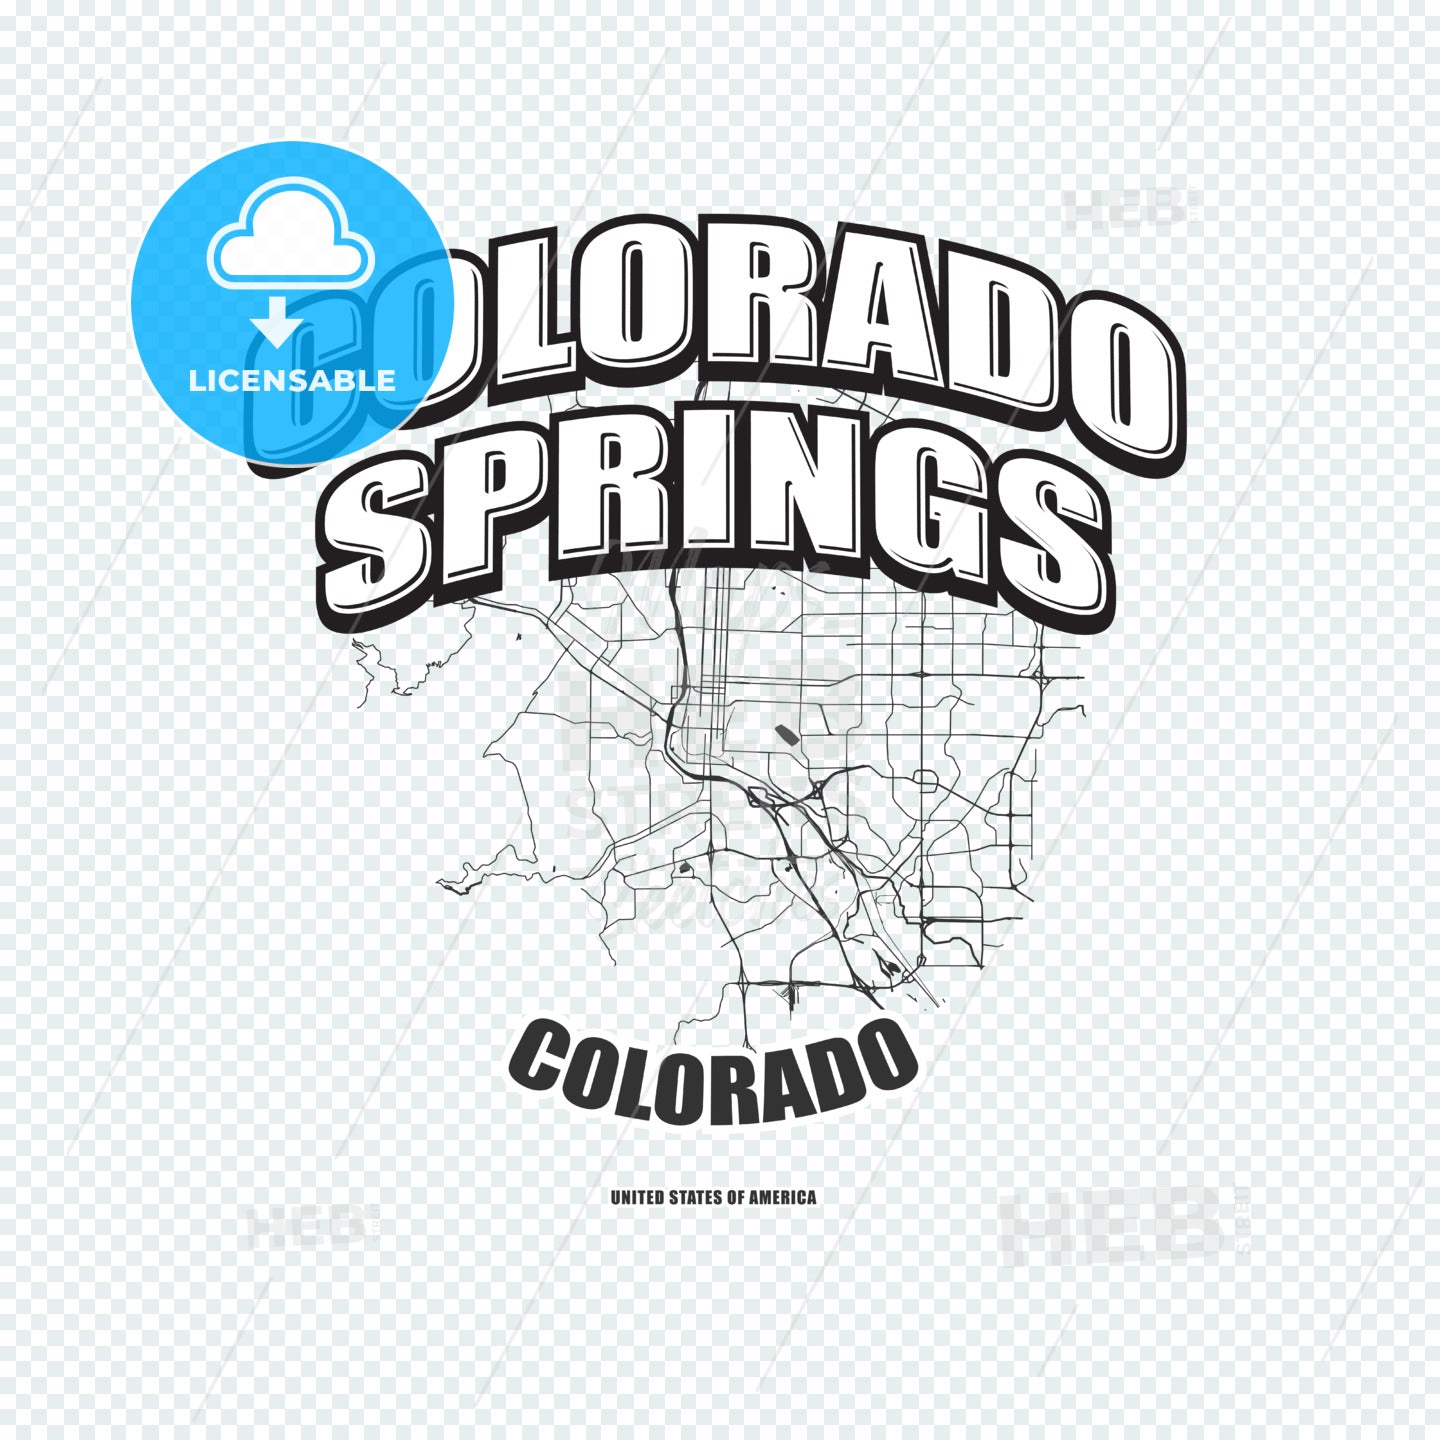 Colorado Springs, Colorado, logo artwork – instant download